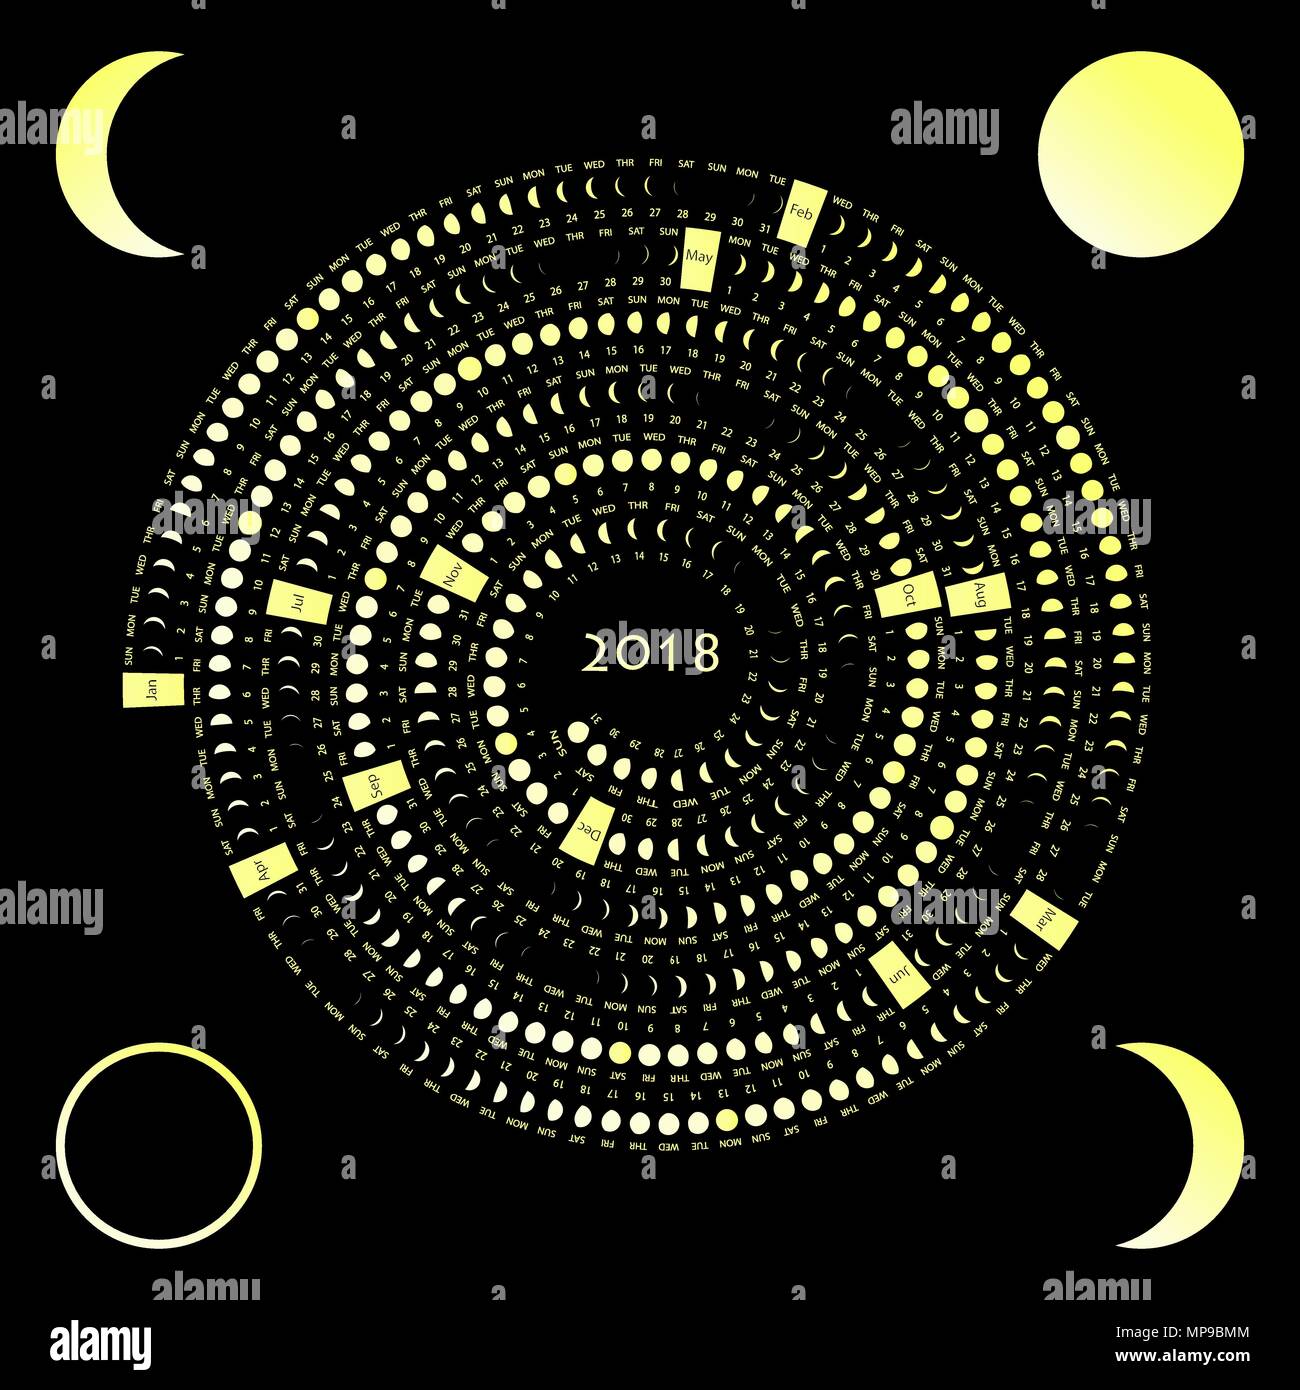 Mondphasen Kalender auf einem dunklen Hintergrund. Mond Kalender 2018  Stock-Vektorgrafik - Alamy